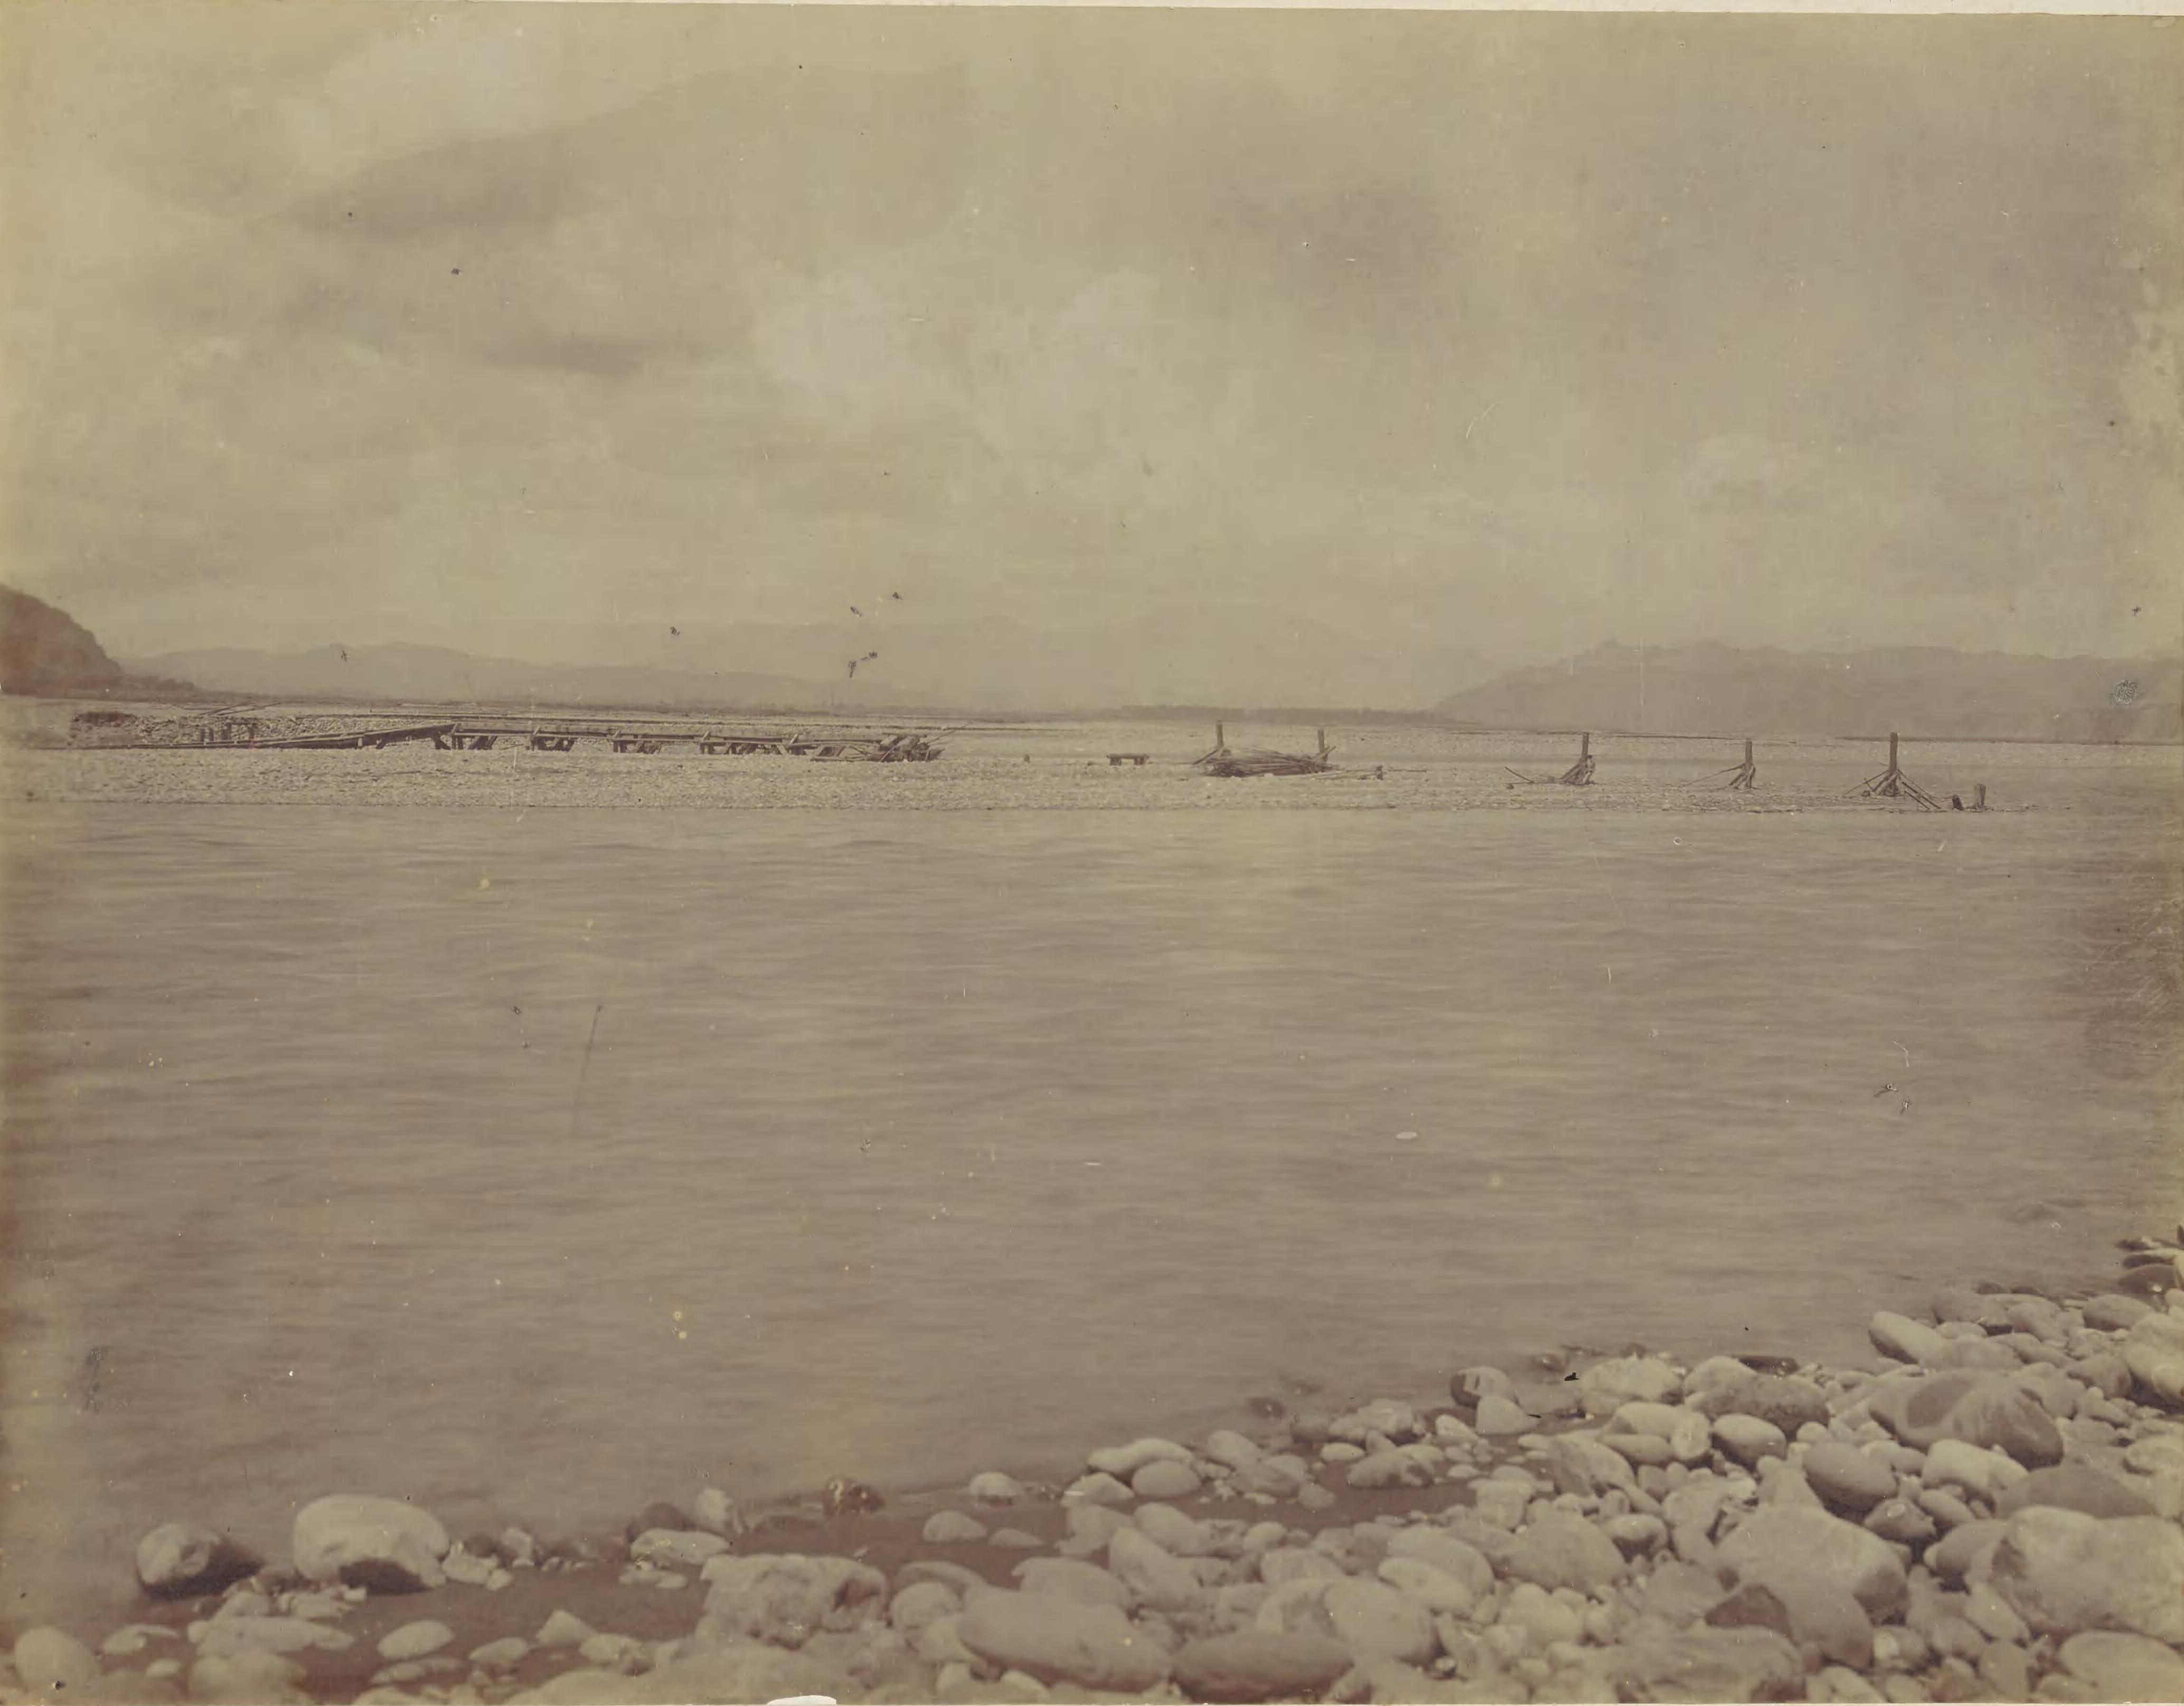 1905年6月18日濁水溪鐵道橋被洪水沖毀。